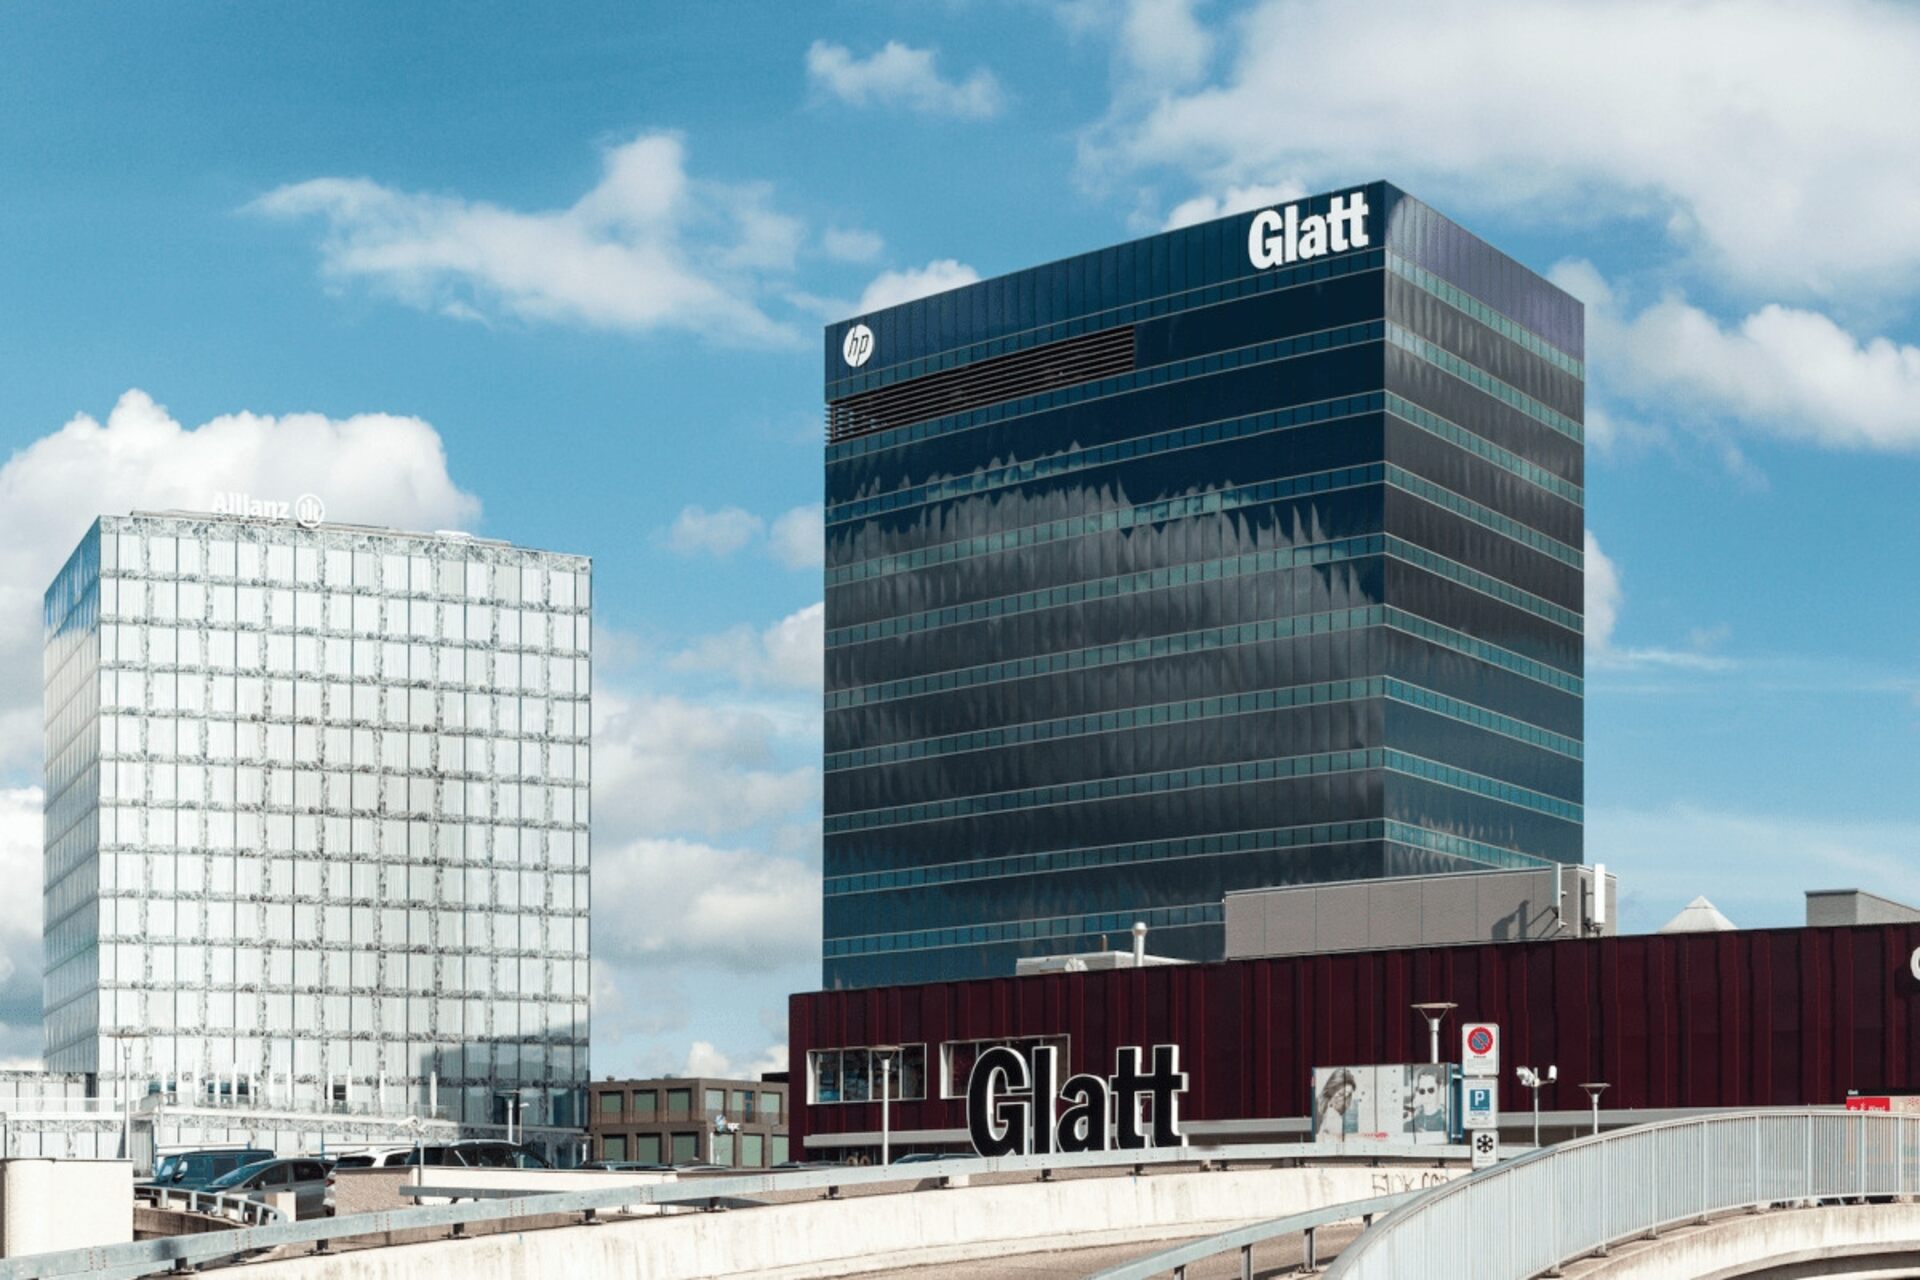 Manažment služieb: Einkaufszentrum Glatt, ktorý sa nachádza na čísle 99 Neue Winterthurerstrasse vo Wallisene, približne dvadsať minút S-Bahn od centra Zürichu, bude hostiť každoročné podujatie itSMF Švajčiarsko 21. marca 2024